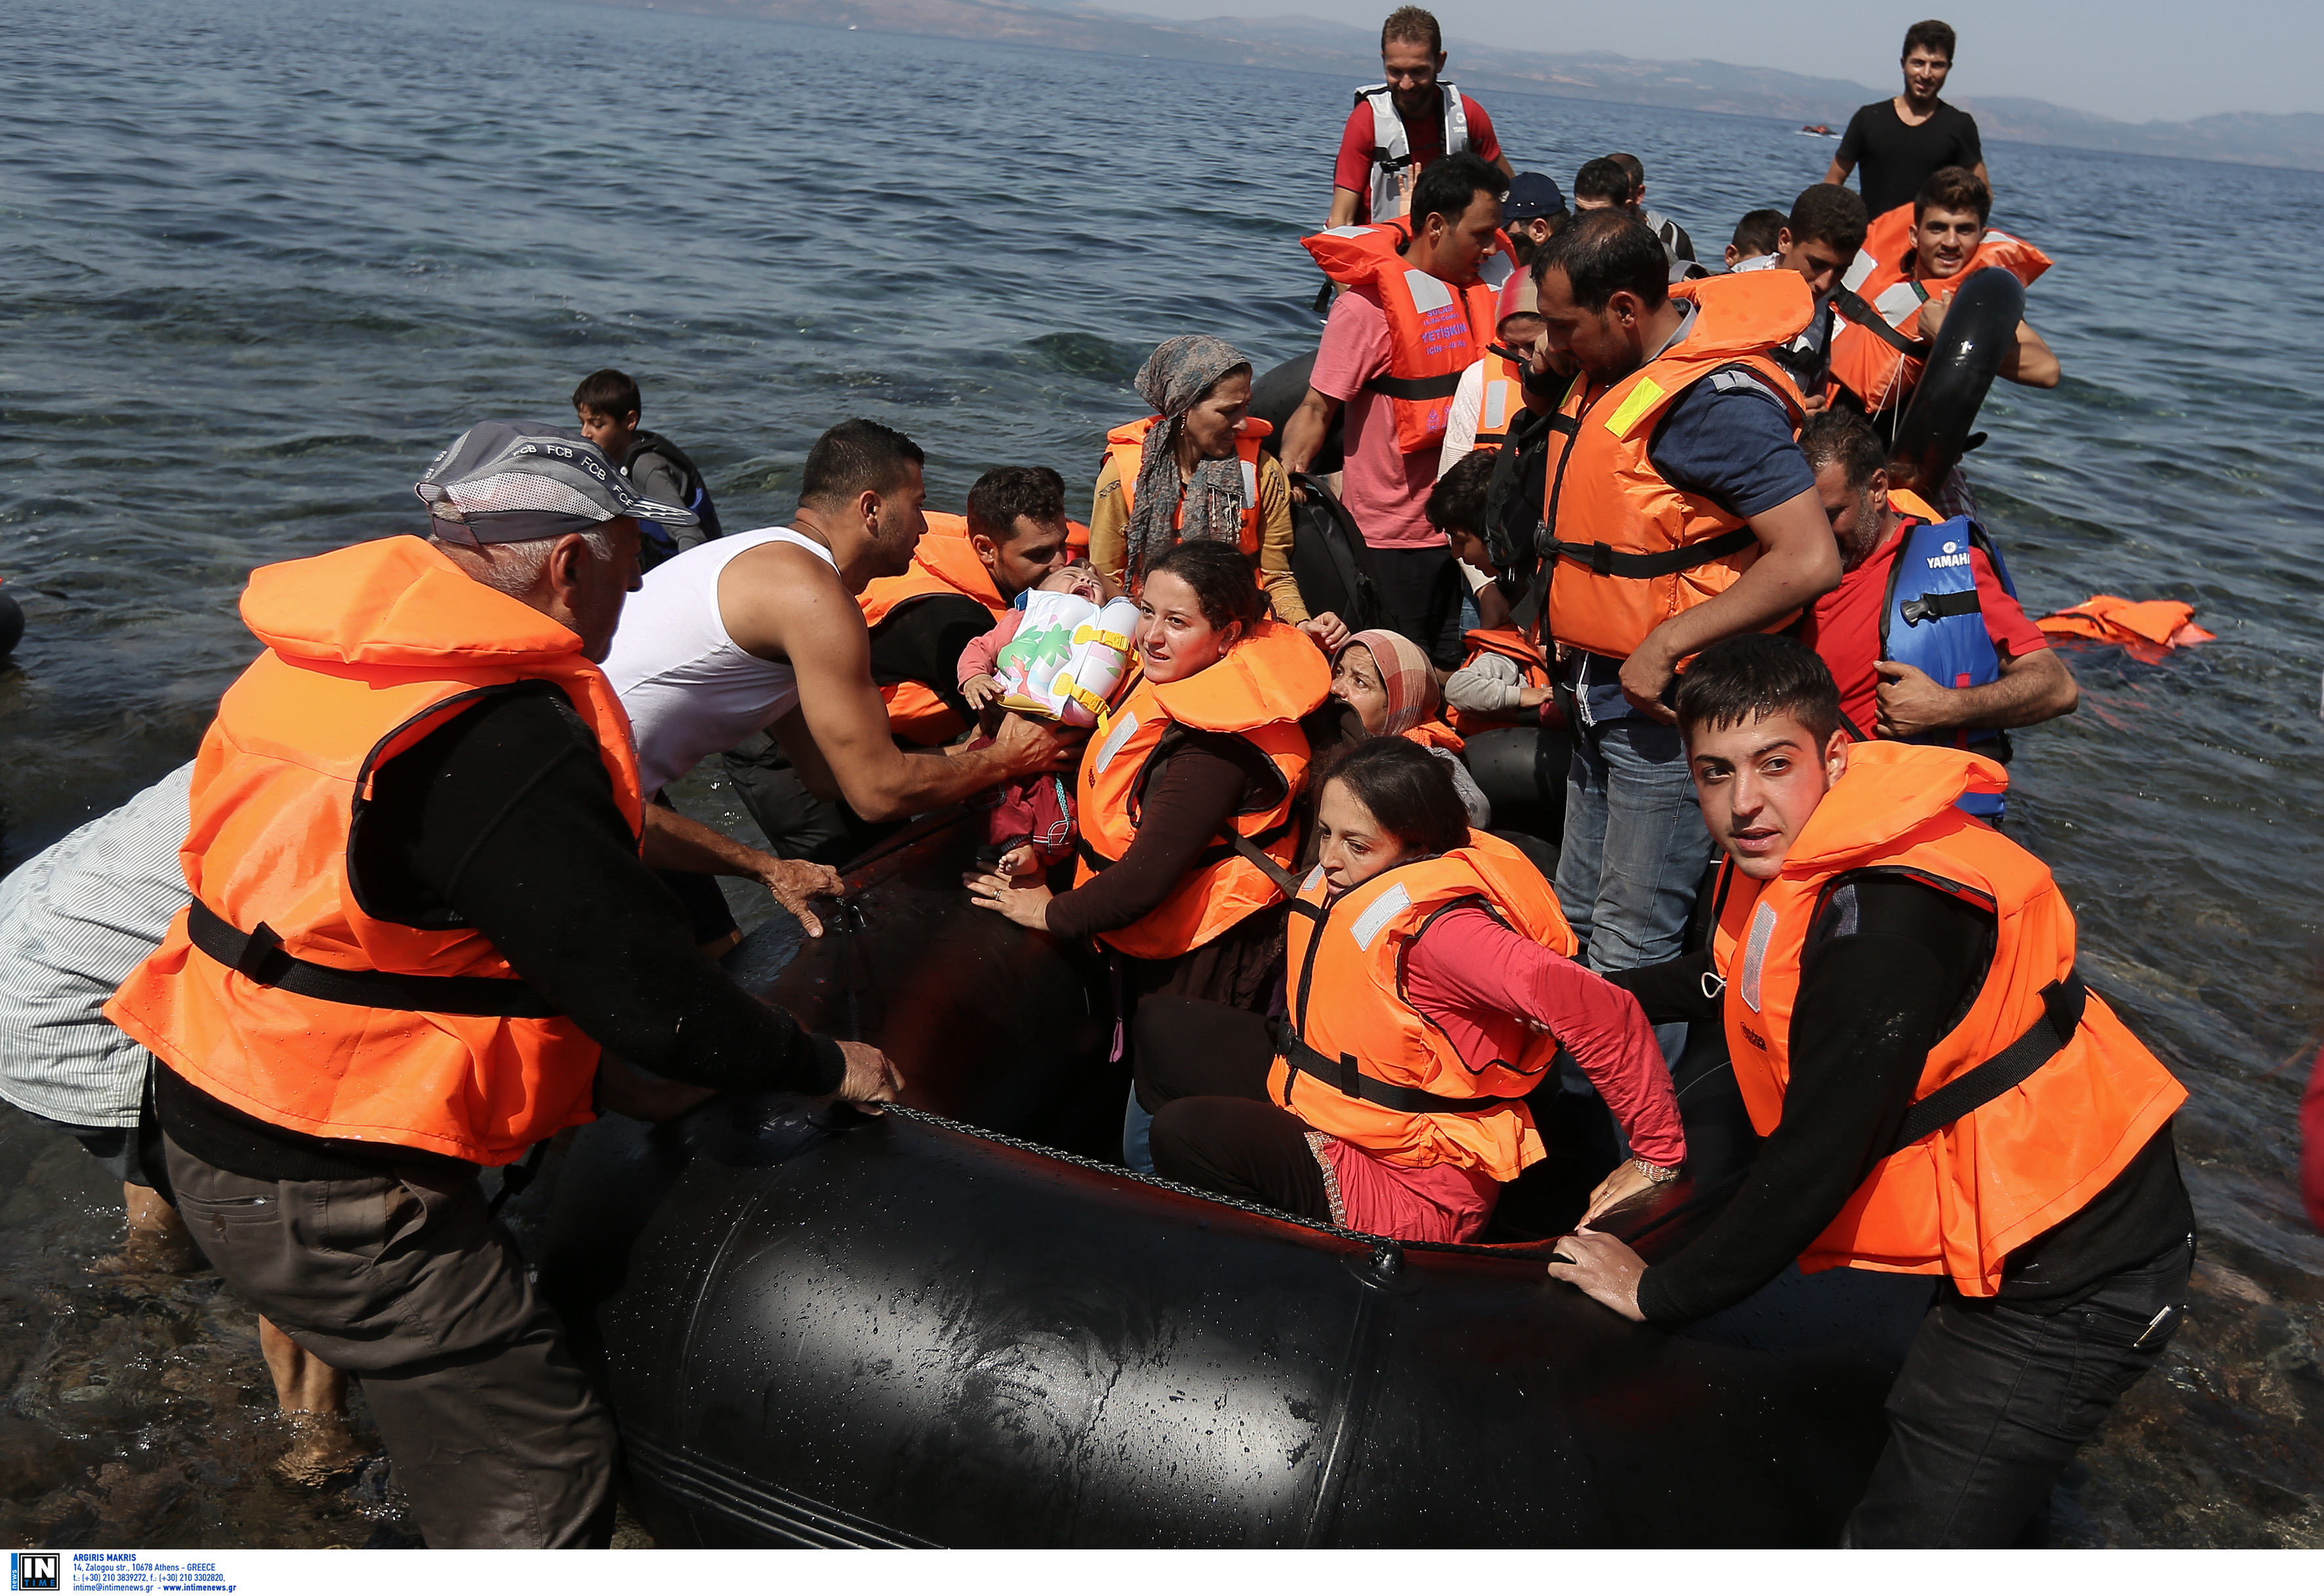 “Απόβαση” μεταναστών στη Λέσβο! Πάνω από 500 μετανάστες με 13 βάρκες κατέφθασαν στο νησί!